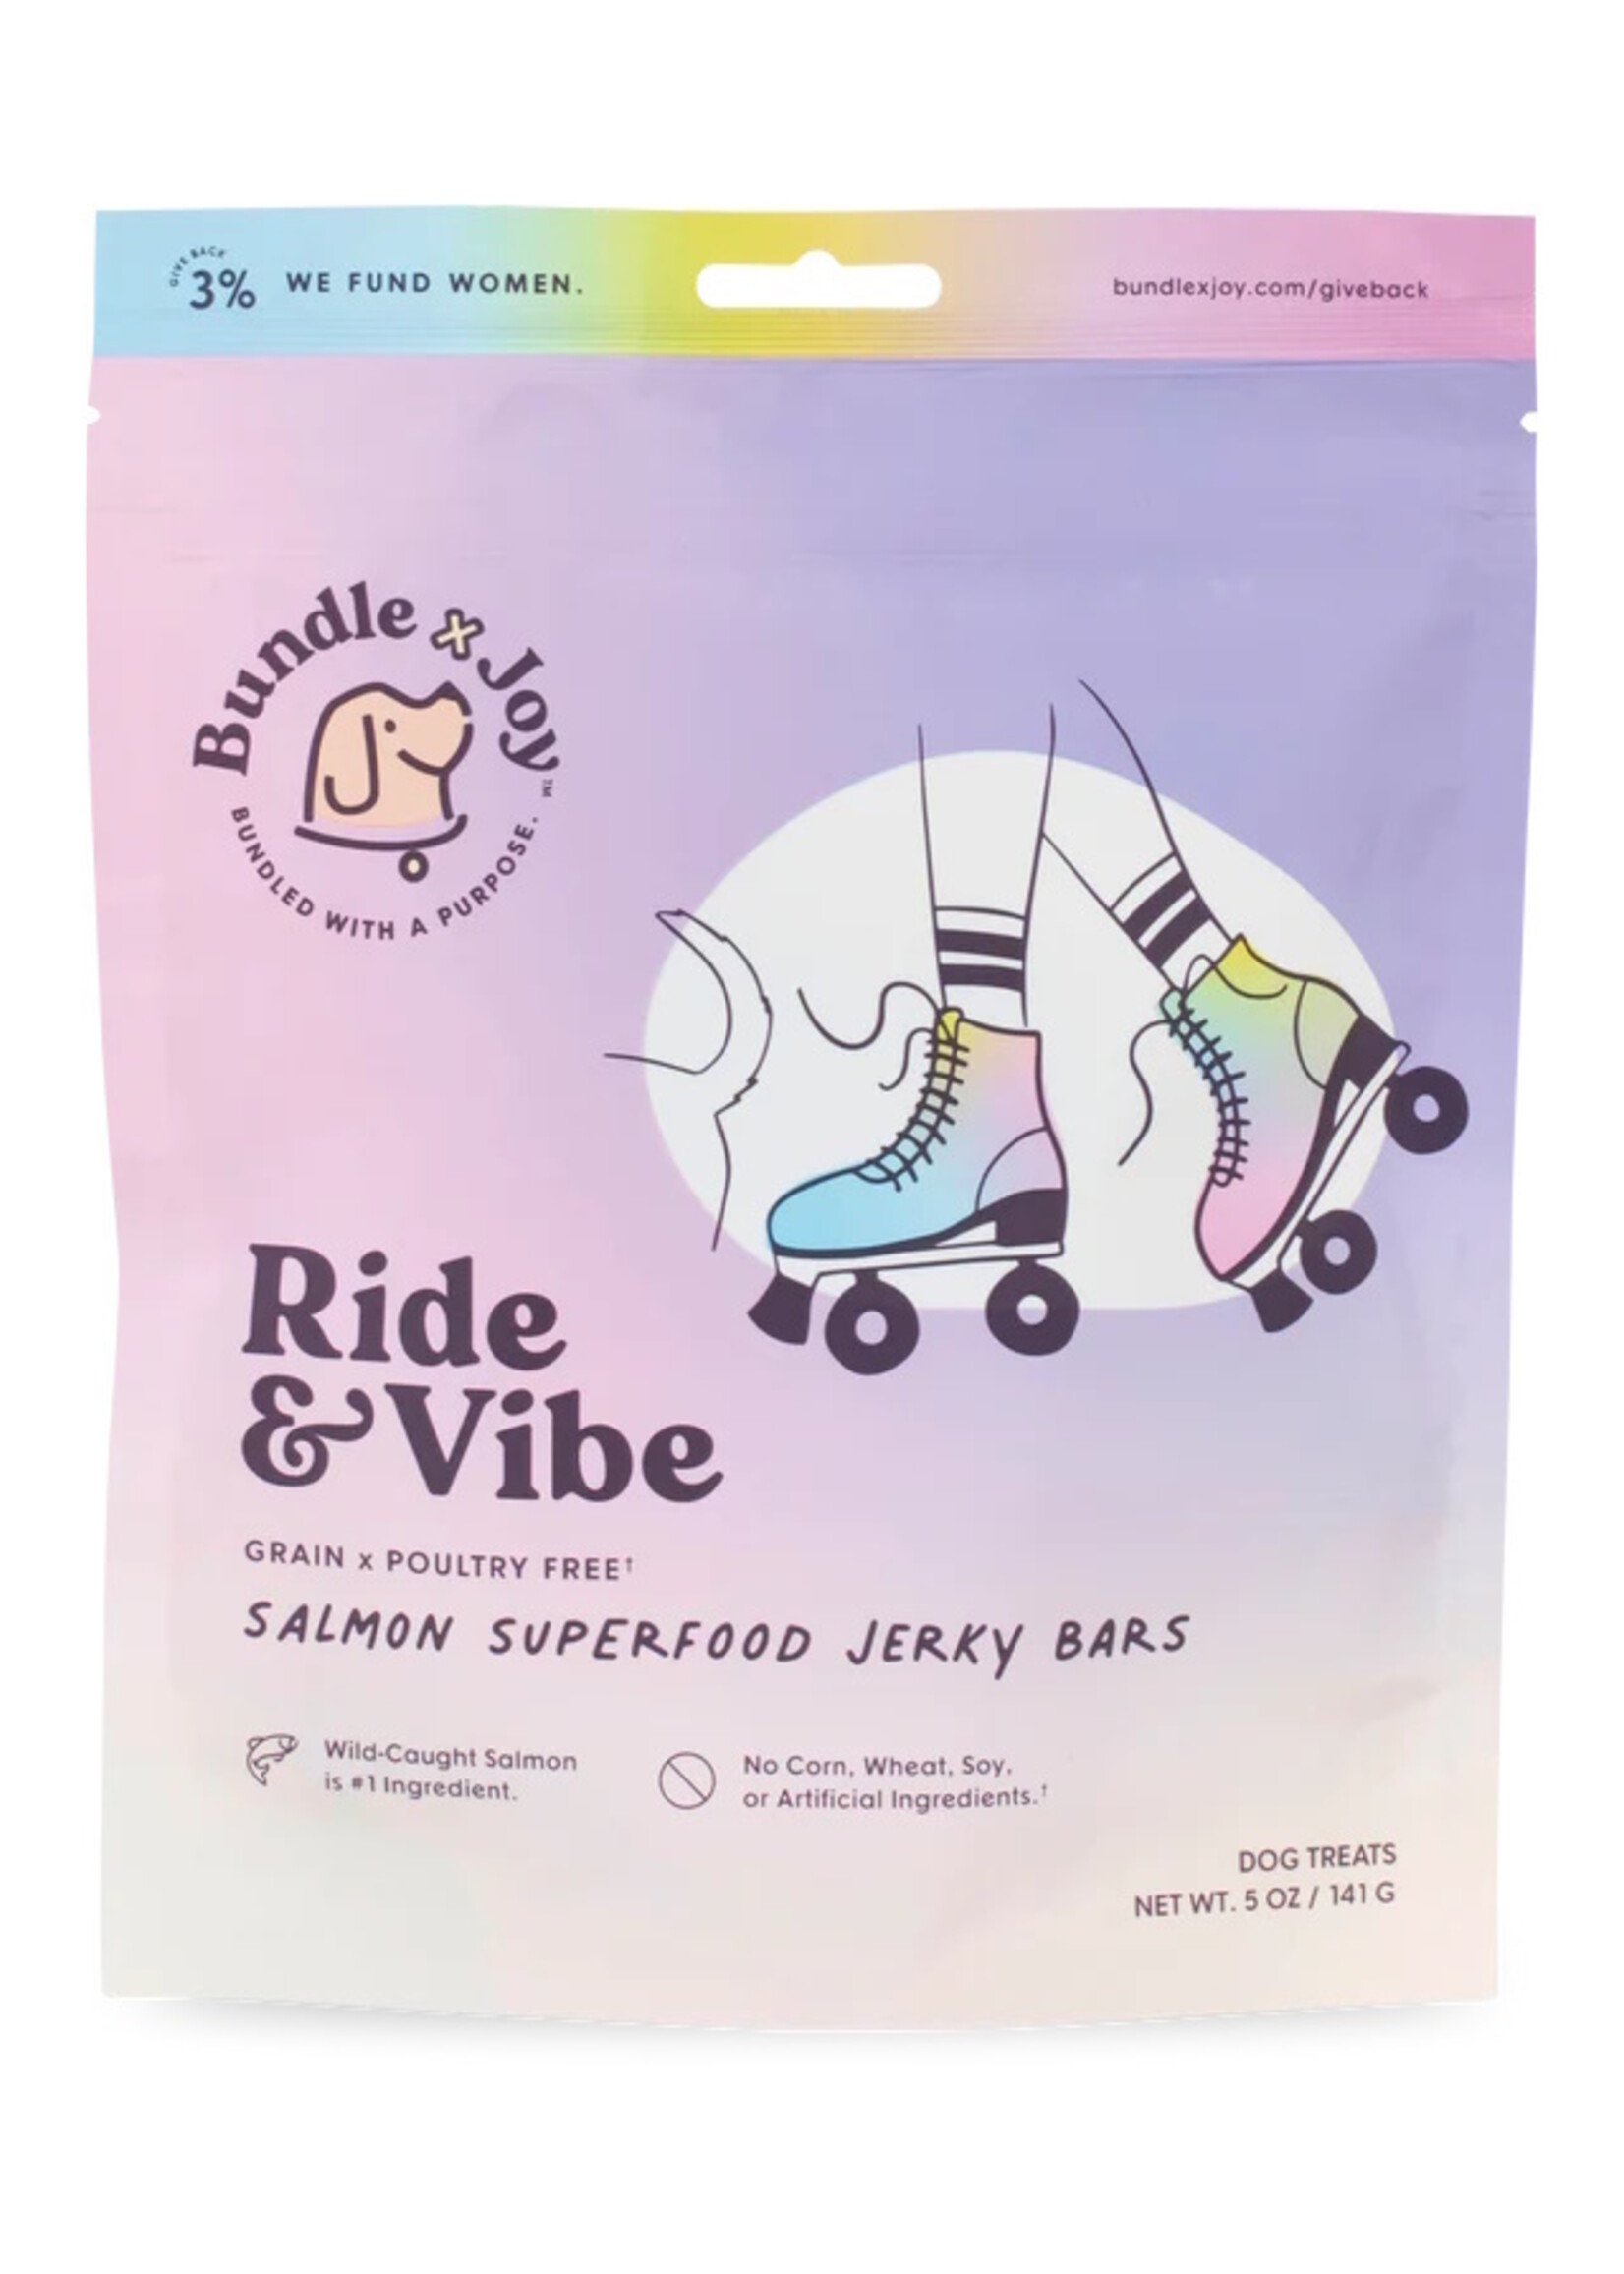 Bundle x Joy Bundle x Joy Superfood Jerky Bars